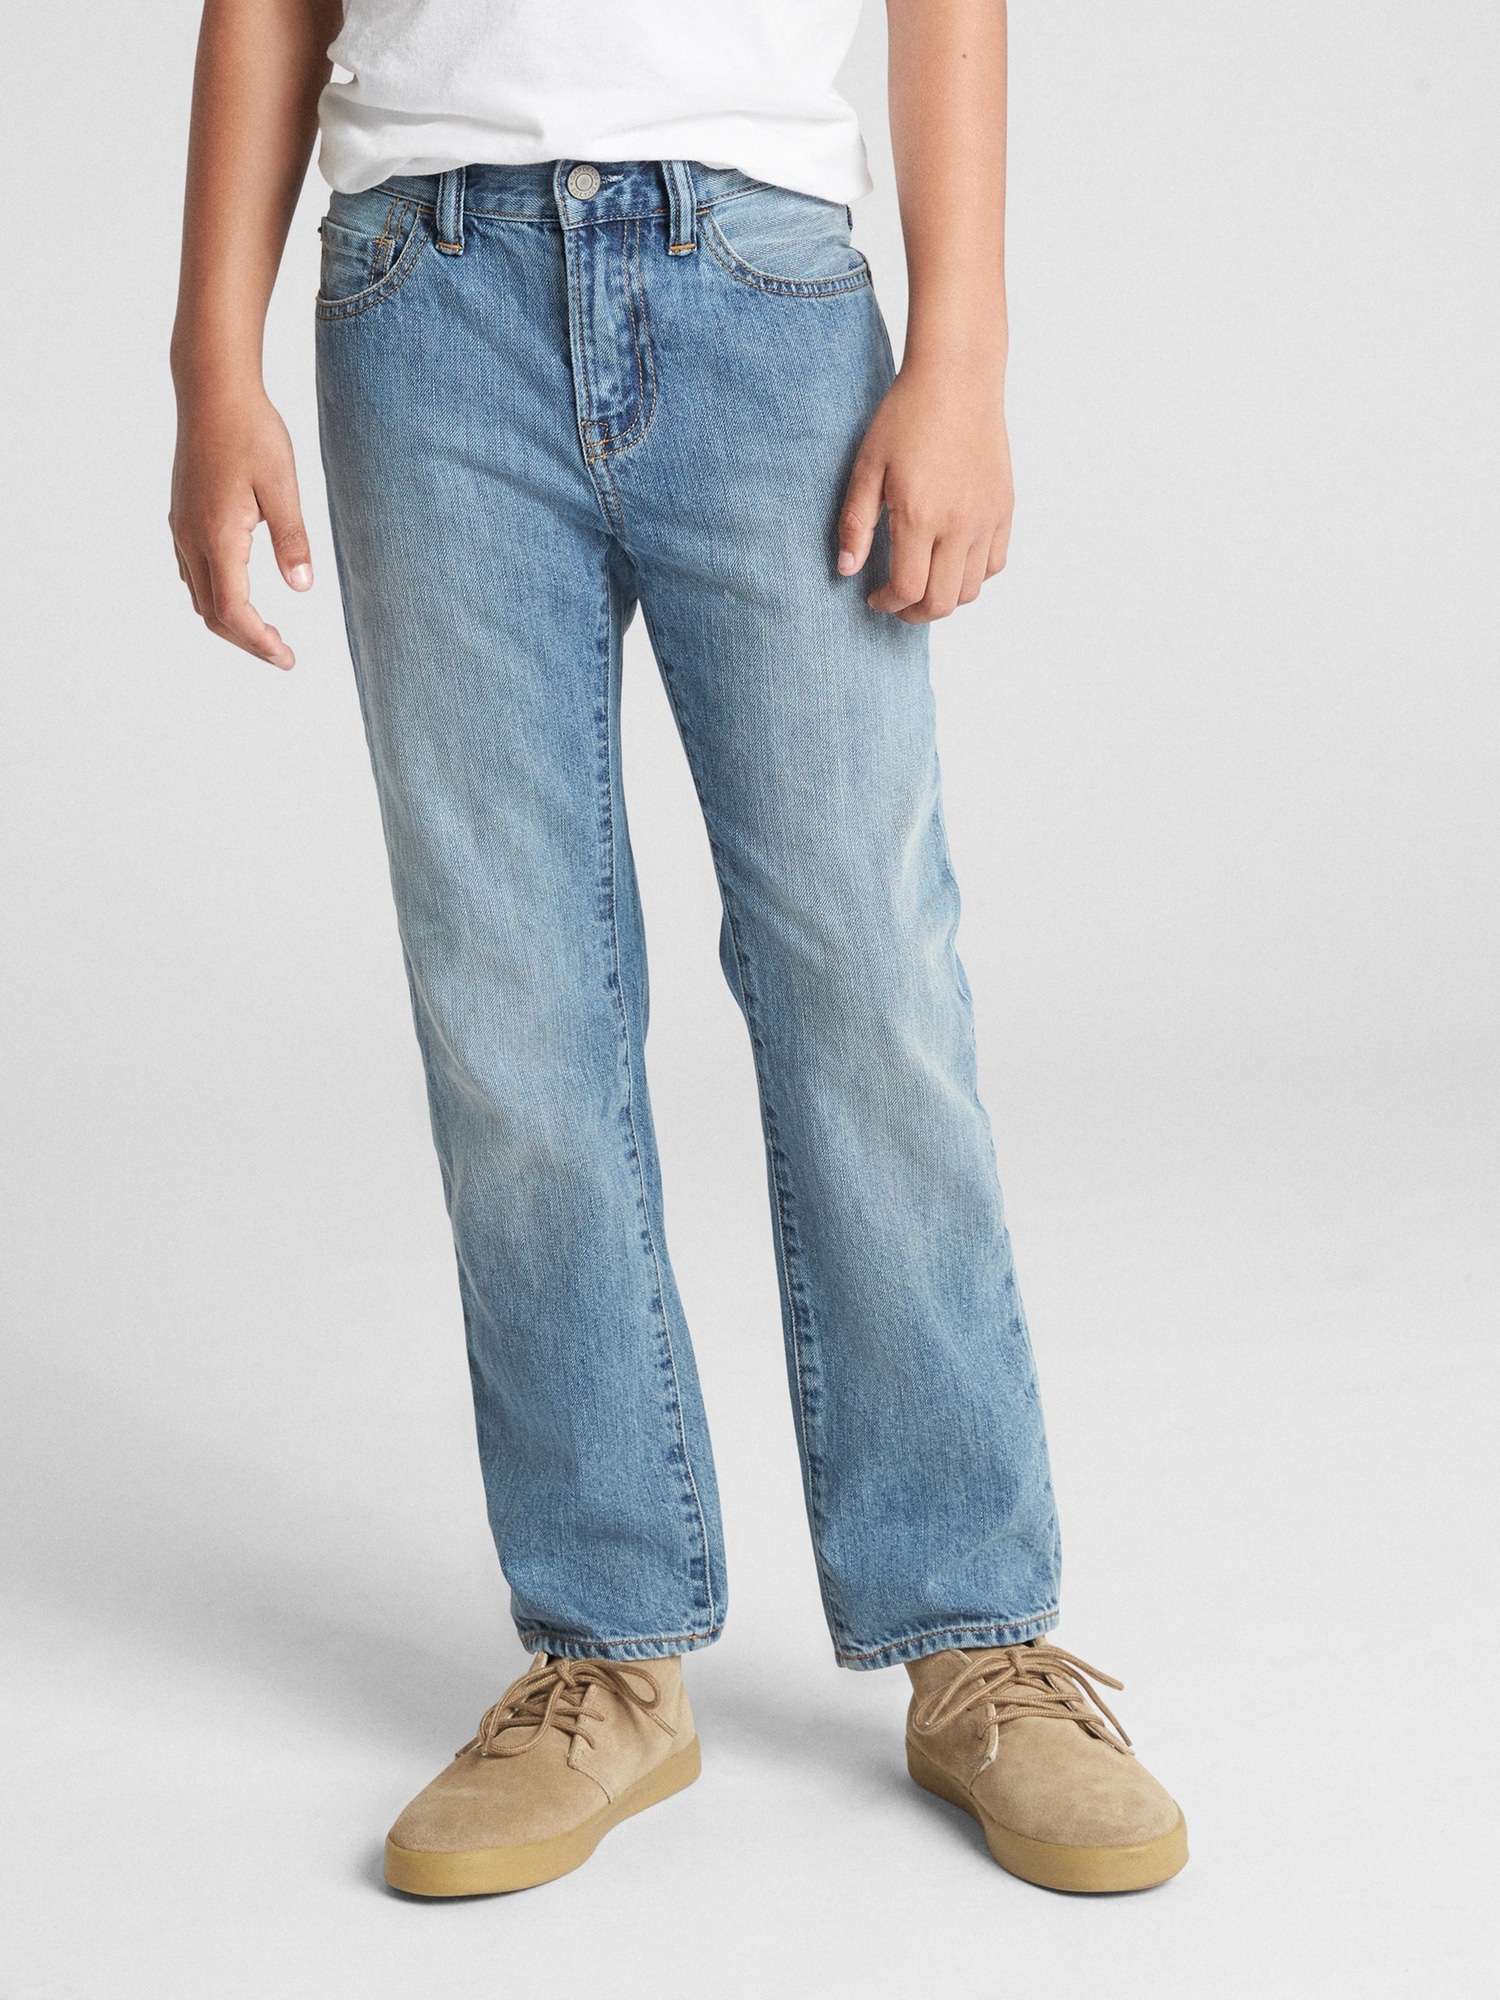 denim original jeans